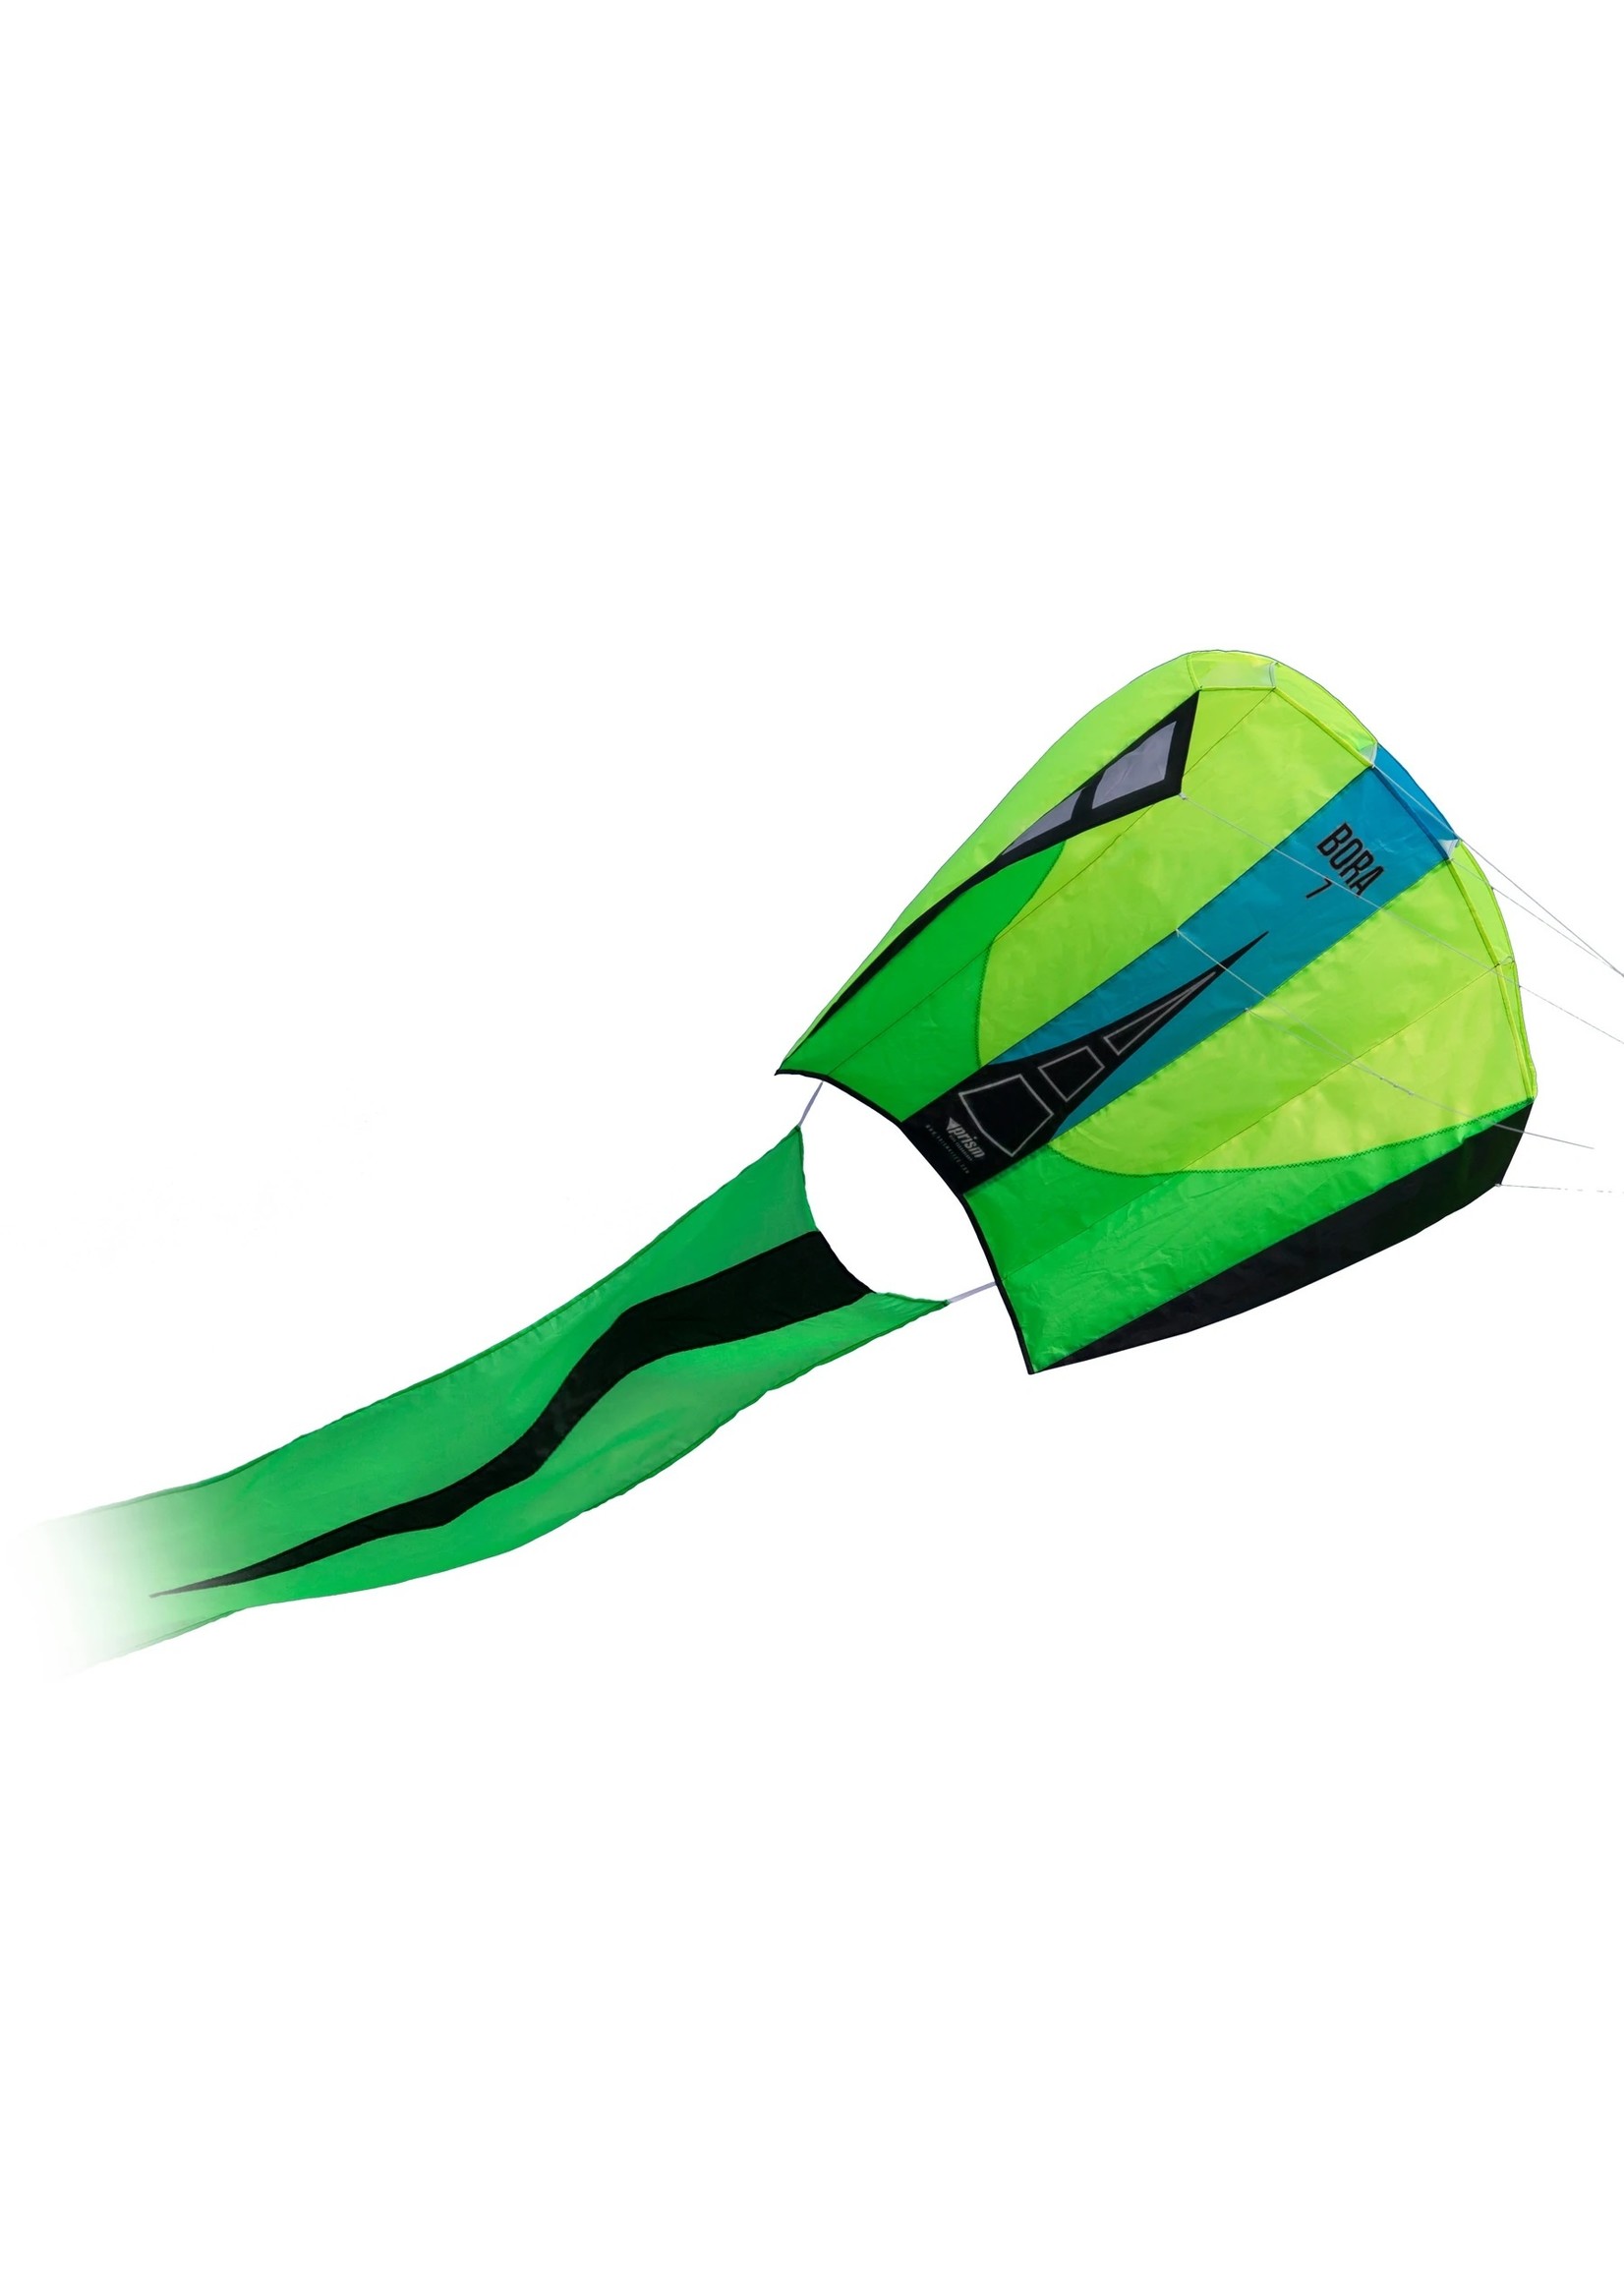 Prism Bora 7 Jade - Single Line Kite